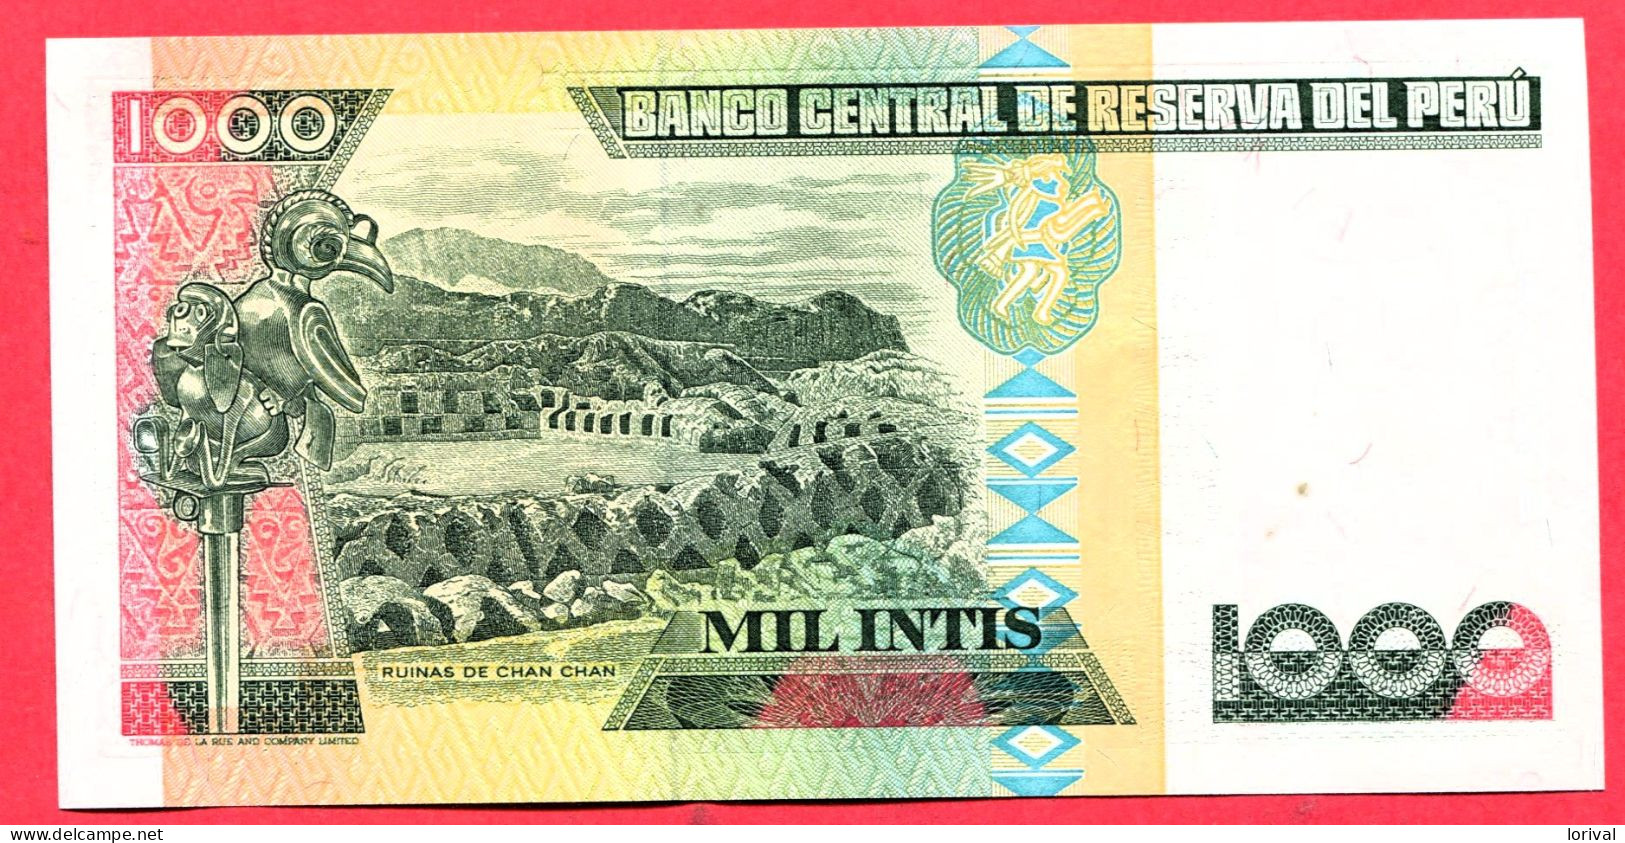 1000 Intis Neuf 3 Euros - Peru